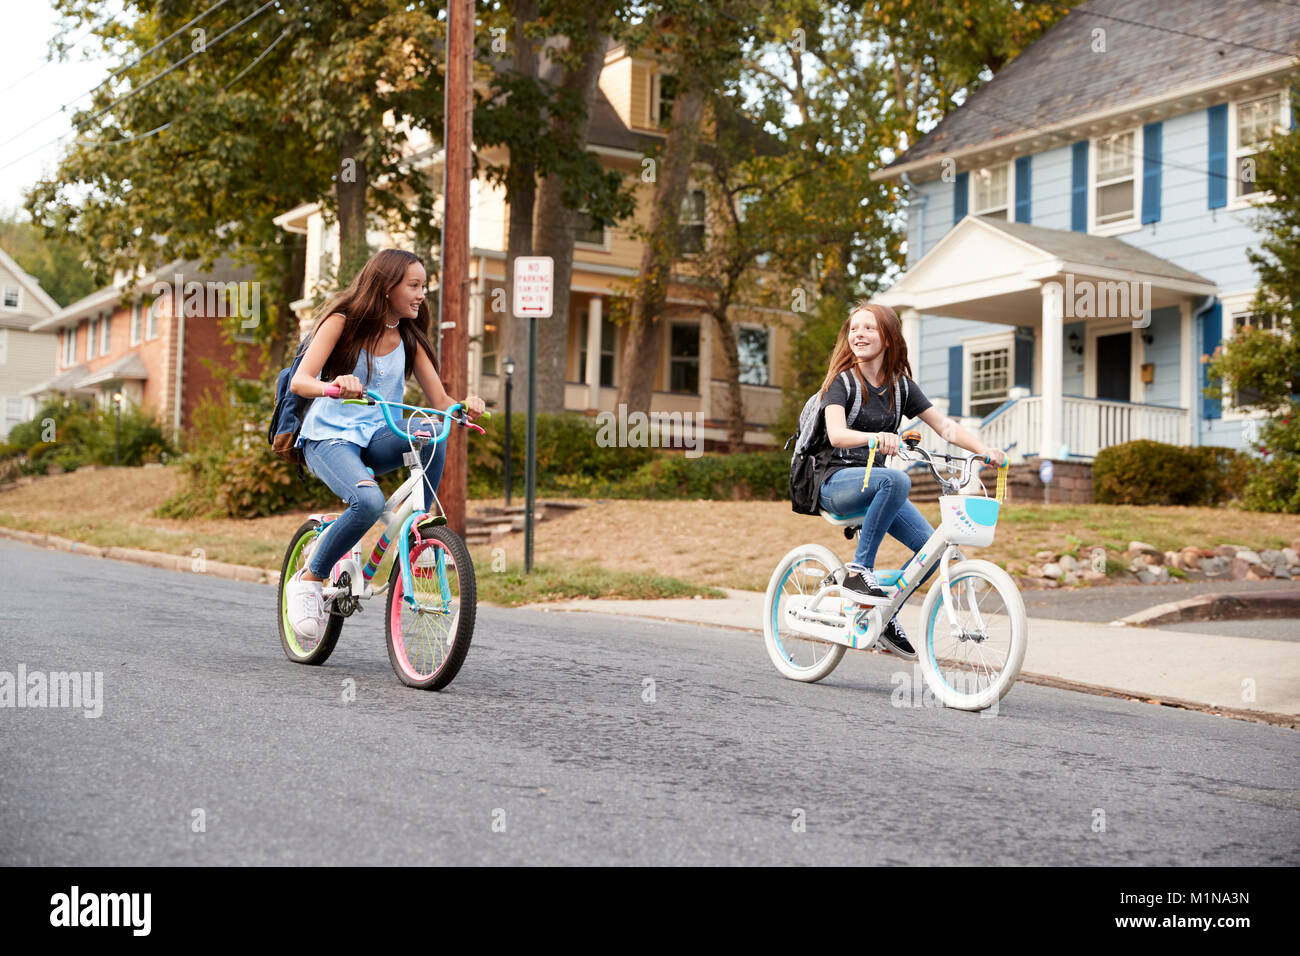 Deux copines adolescentes ride passé sur des vélos dans une rue calme Banque D'Images